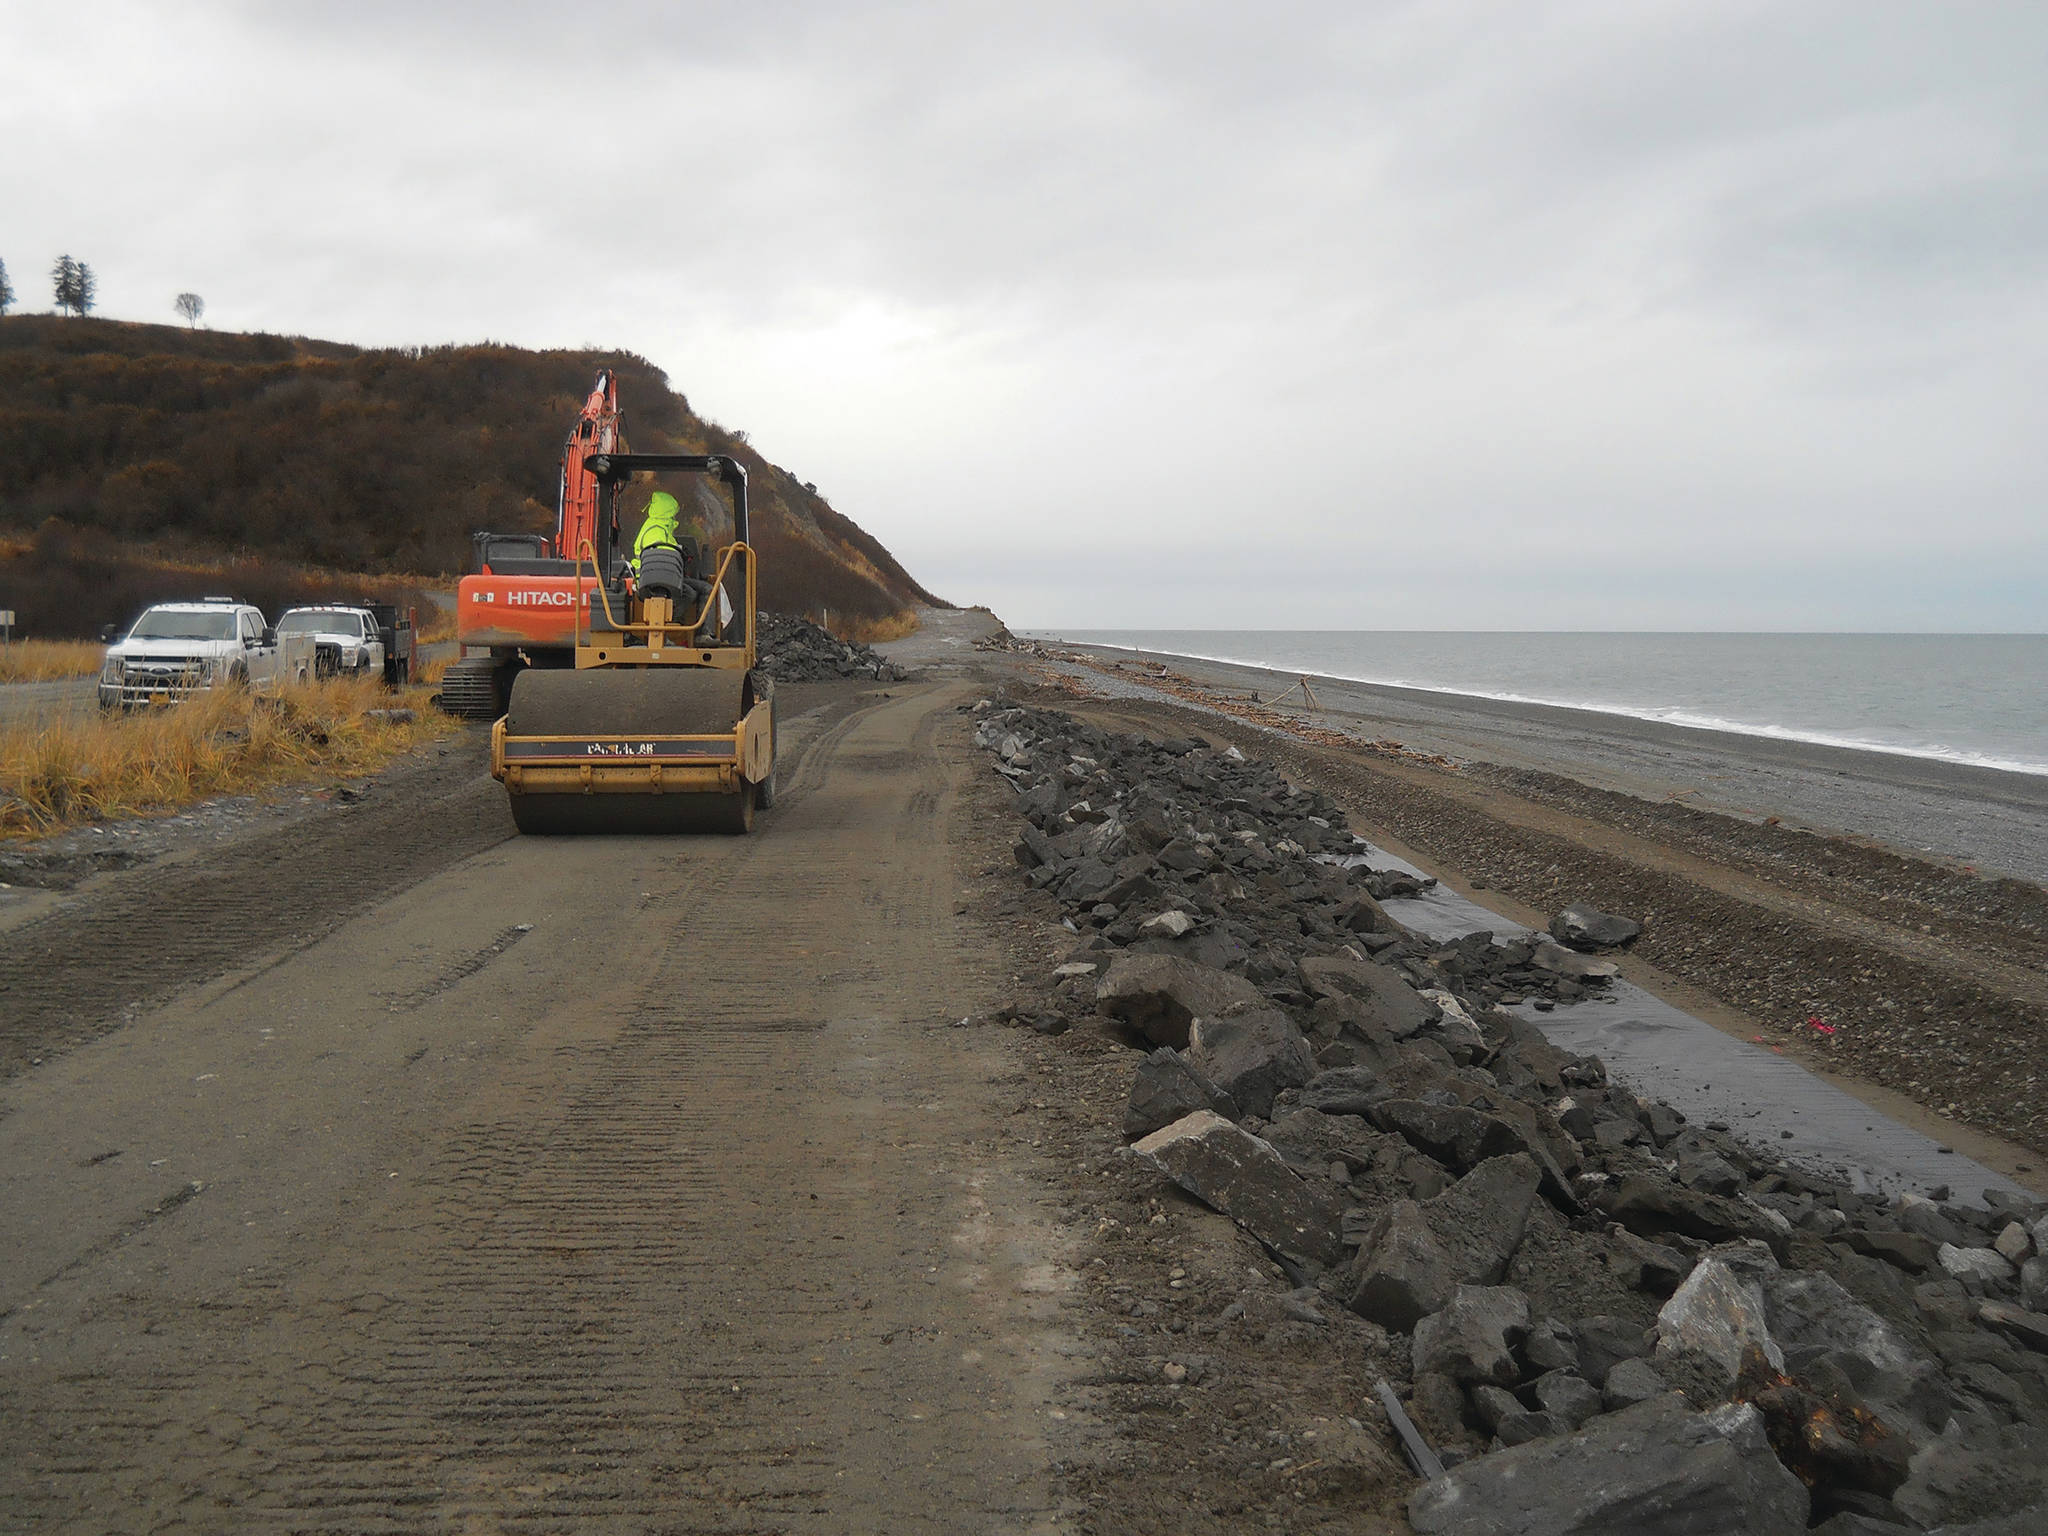 DNR does erosion work at Anchor Point, Deep Creek beaches